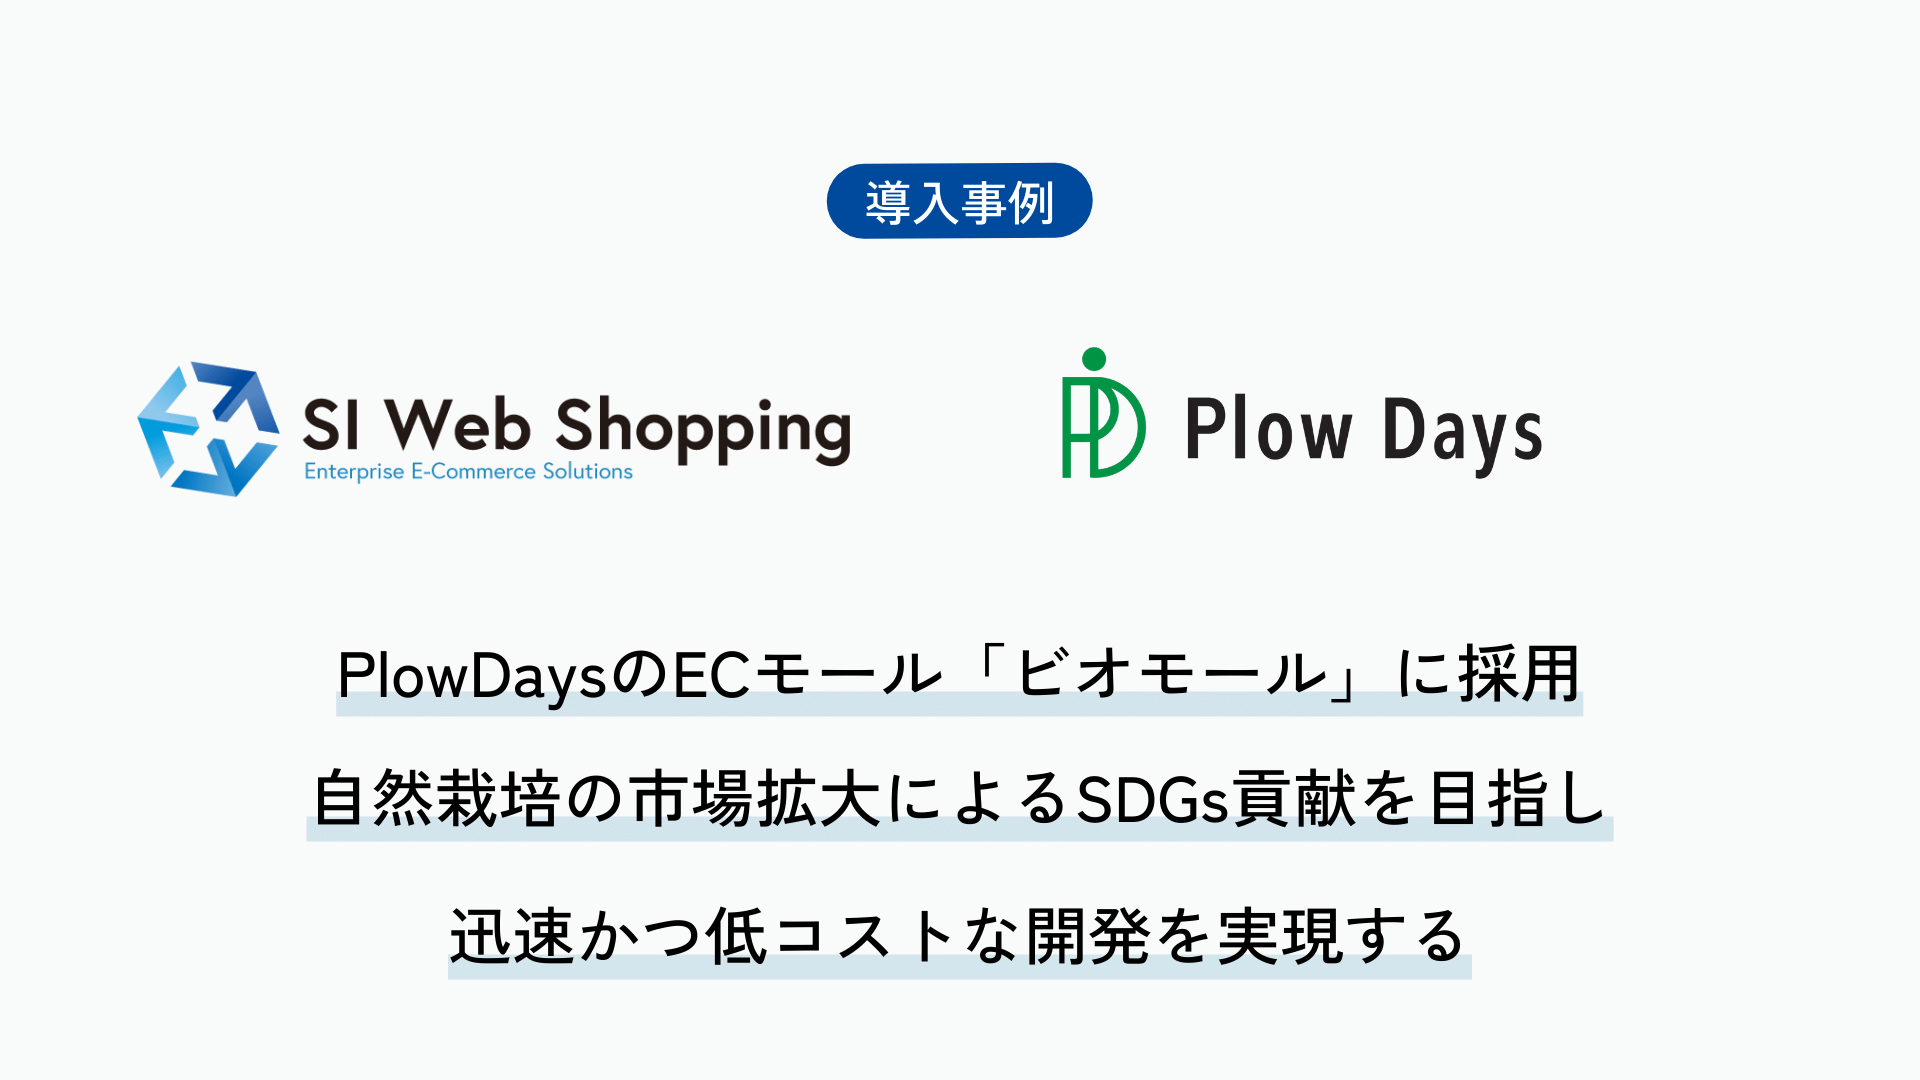 SI Web Shopping、PlowDaysのECモール「ビオモール」に採用。自然栽培の市場拡大によるSDGs貢献を目指し、SI Web Shoppingを用いた開発で迅速かつ低コストな開発を実現する